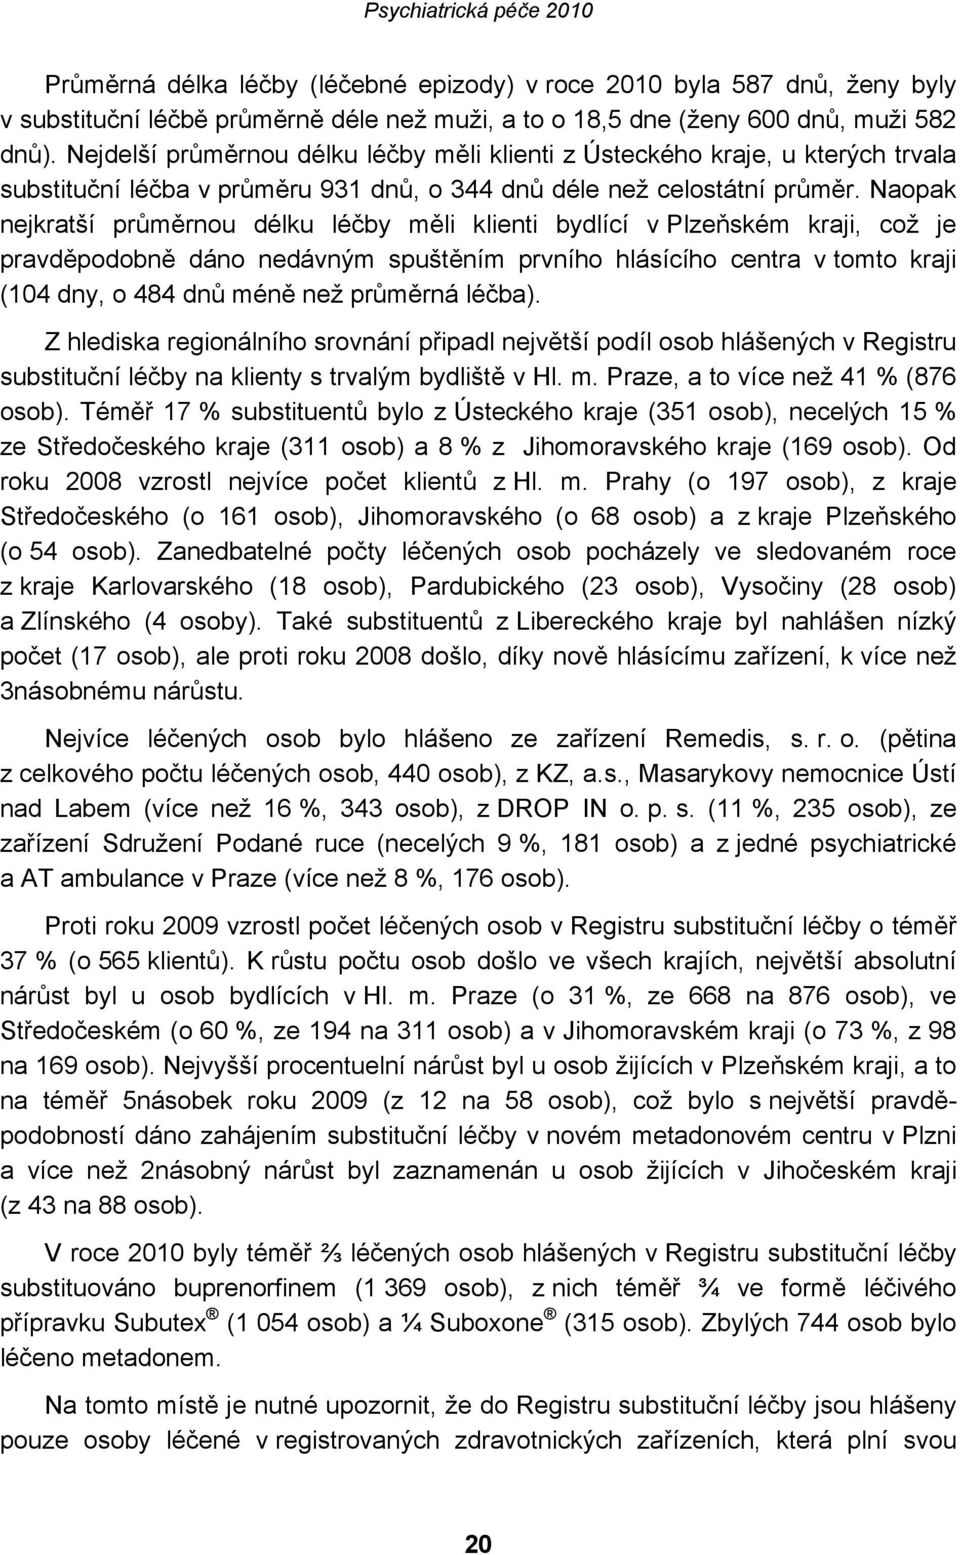 Naopak nejkratší průměrnou délku léčby měli klienti bydlící v Plzeňském kraji, což je pravděpodobně dáno nedávným spuštěním prvního hlásícího centra v tomto kraji (104 dny, o 484 dnů méně než